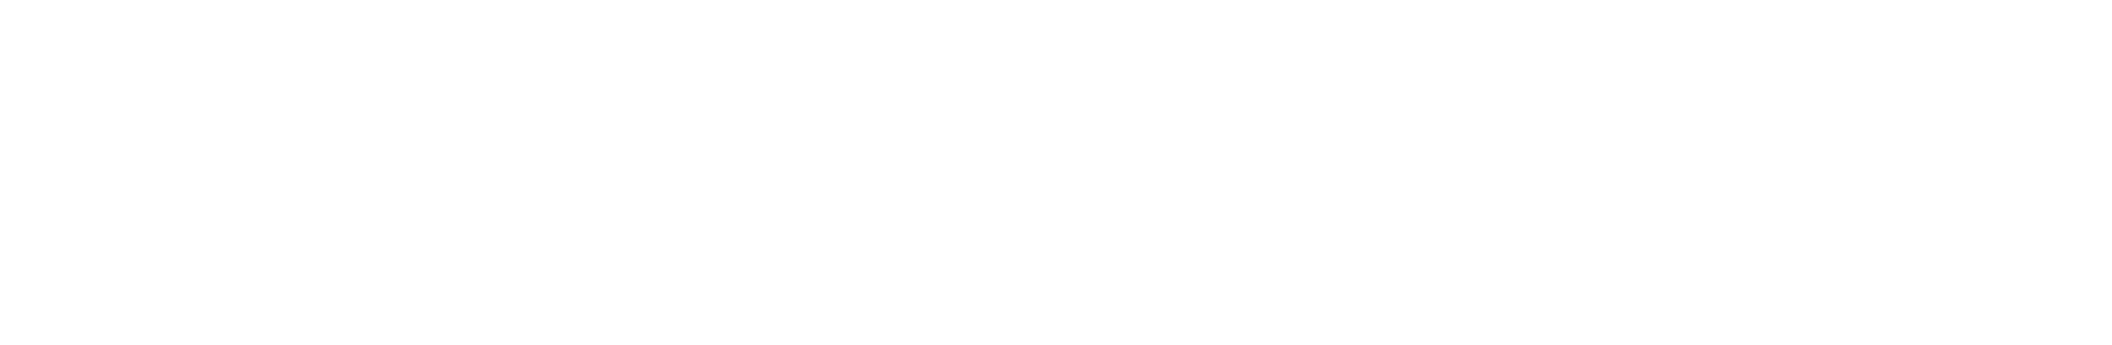 Colegio María Reina | Salesianas Aravaca (Madrid)